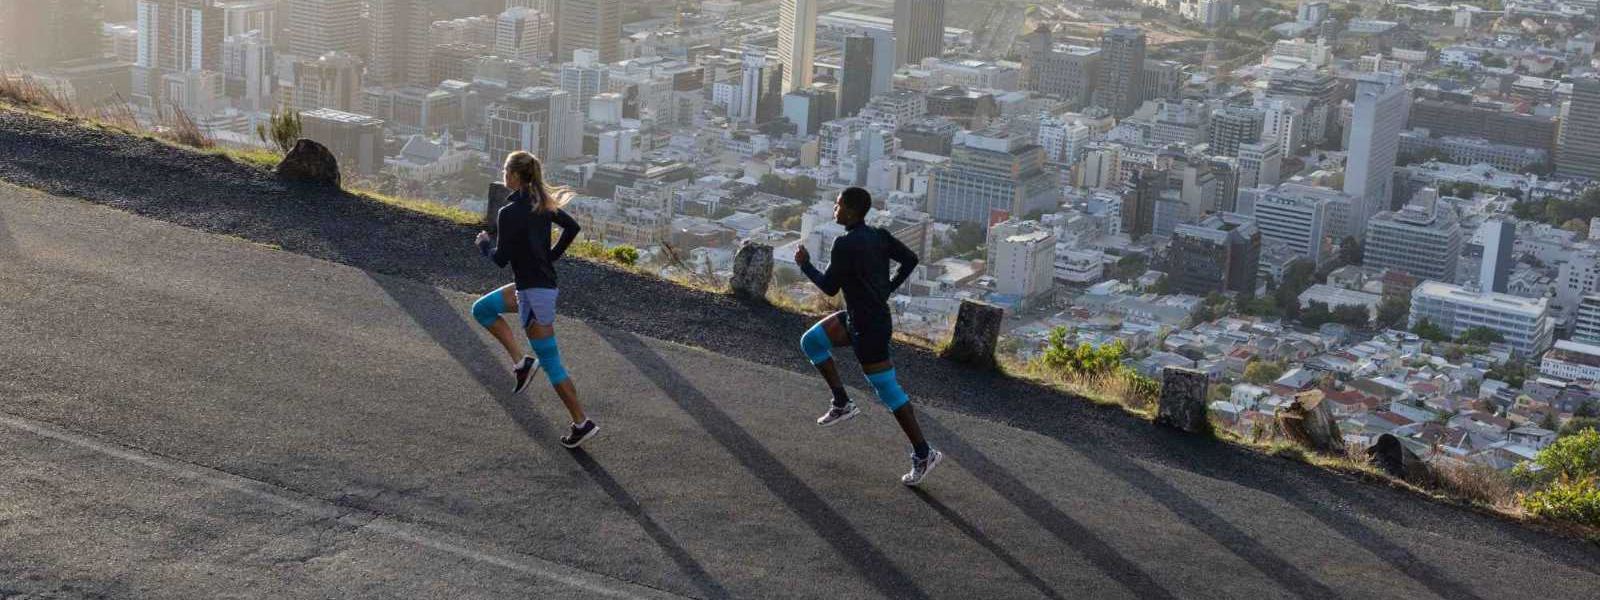 Eine Frau und ein Mann mit blauen Kniebandagen laufen eine Straße oberhalb einer Großstadt hinauf